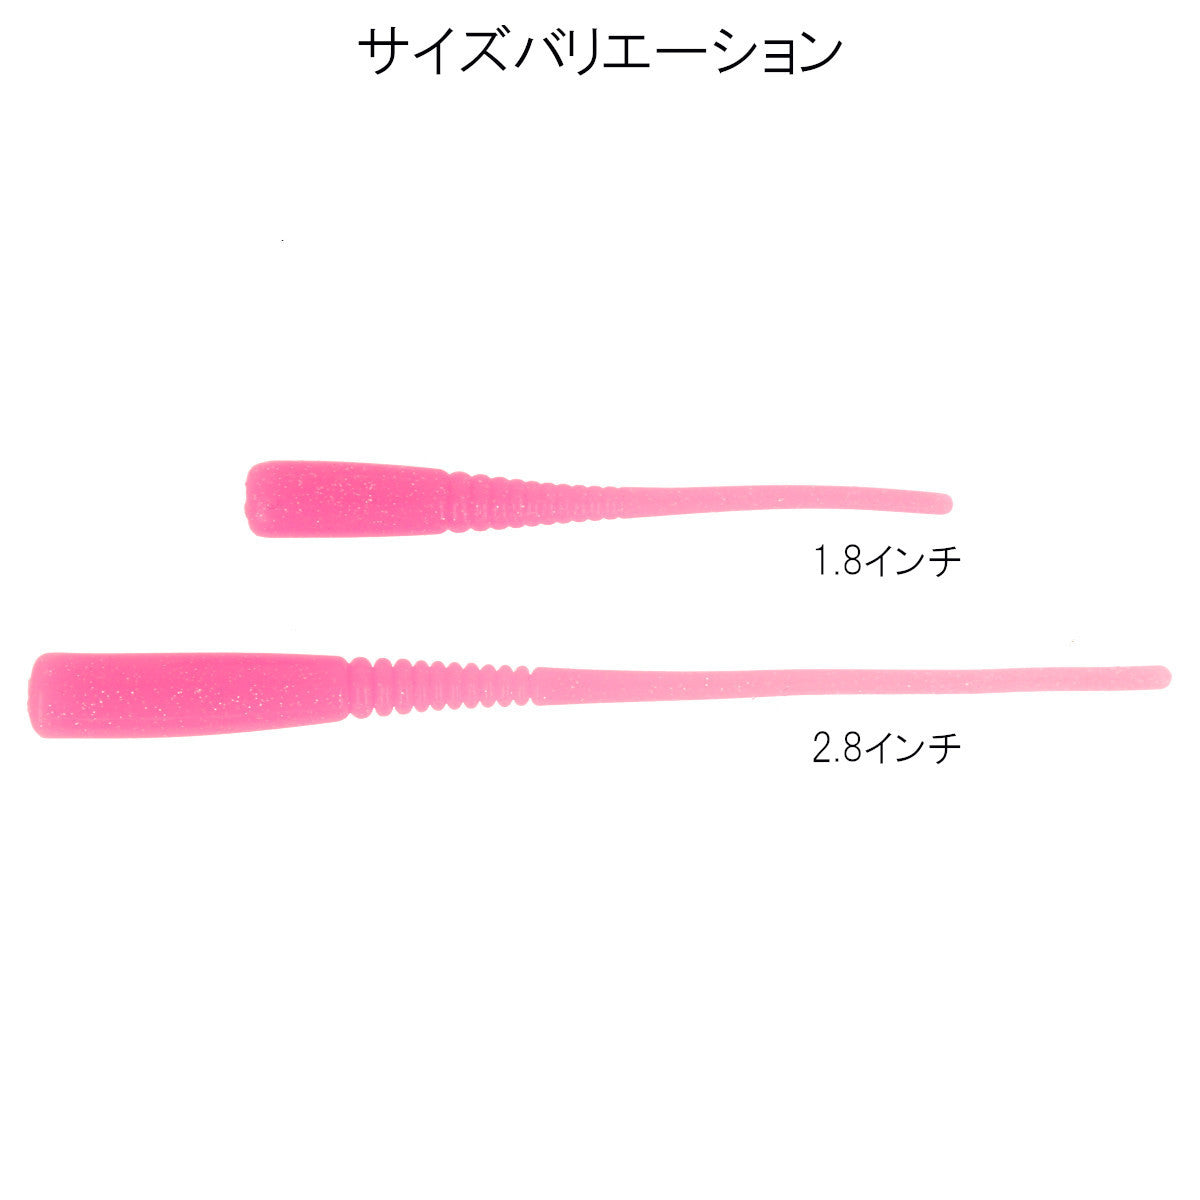 アジキュート 2.8インチ 夜光ピンク 【ゆうパケット】